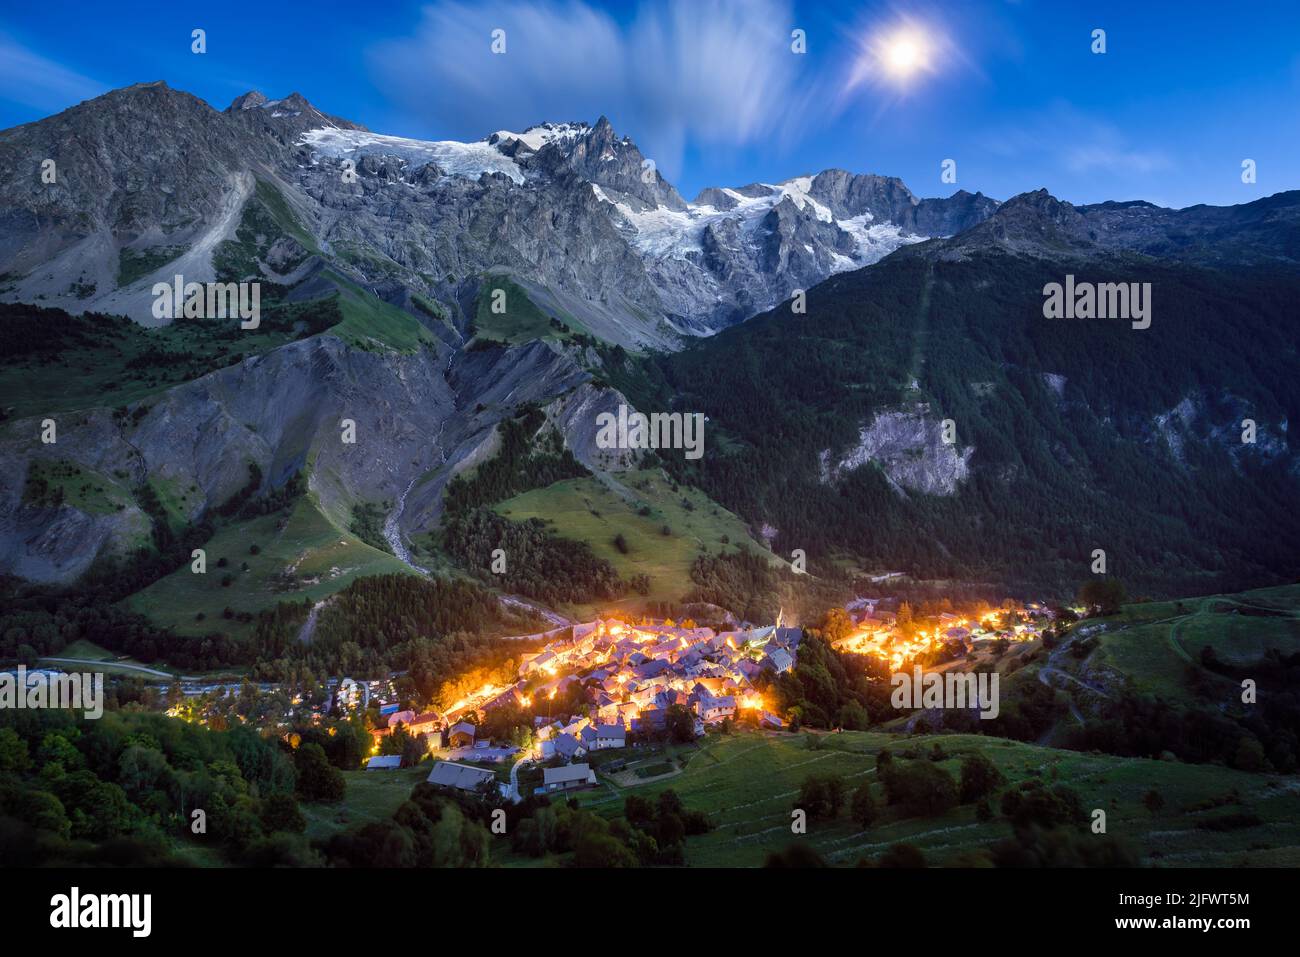 Villaggio la grave con la vetta la Meije e ghiacciai al crepuscolo con l'alba. Parco Nazionale degli Ecrins, Hautes-Alpes, Alpi francesi, Francia Foto Stock